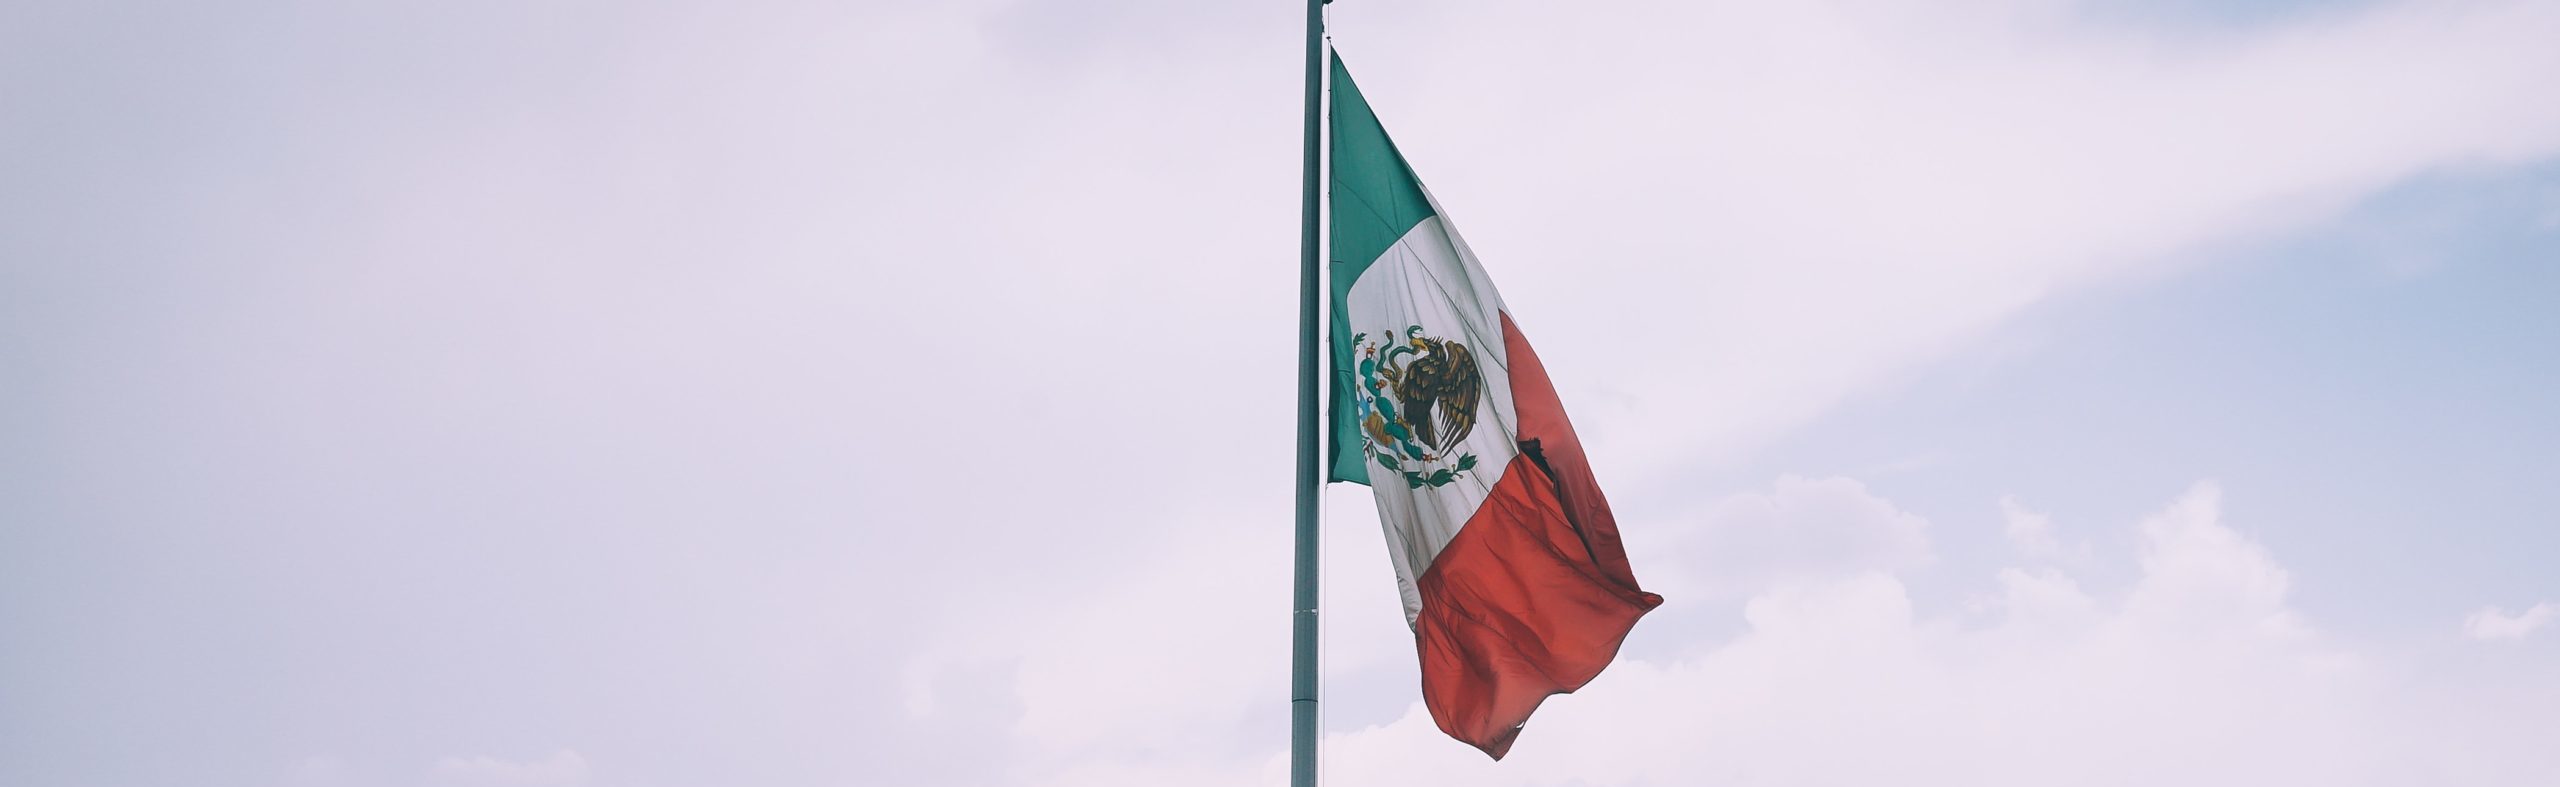 Reforma de la industria eléctrica en México. La campaña Luces de las Resistencias en el parlamento abierto de la Cámara de Diputados